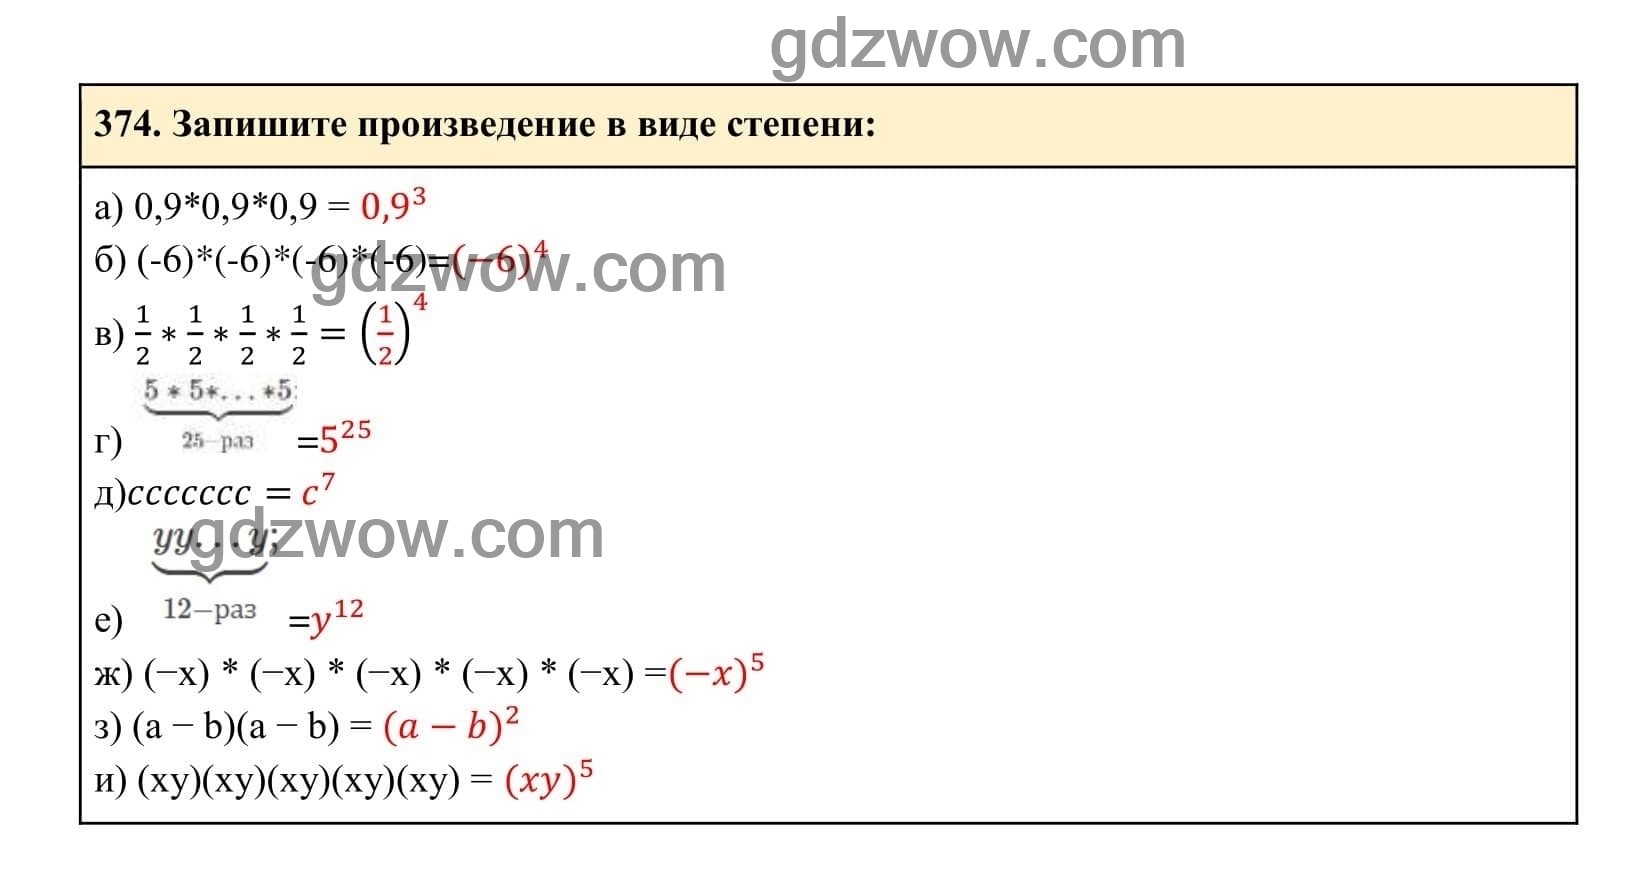 Упражнение 374 - ГДЗ по Алгебре 7 класс Учебник Макарычев (решебник) - GDZwow